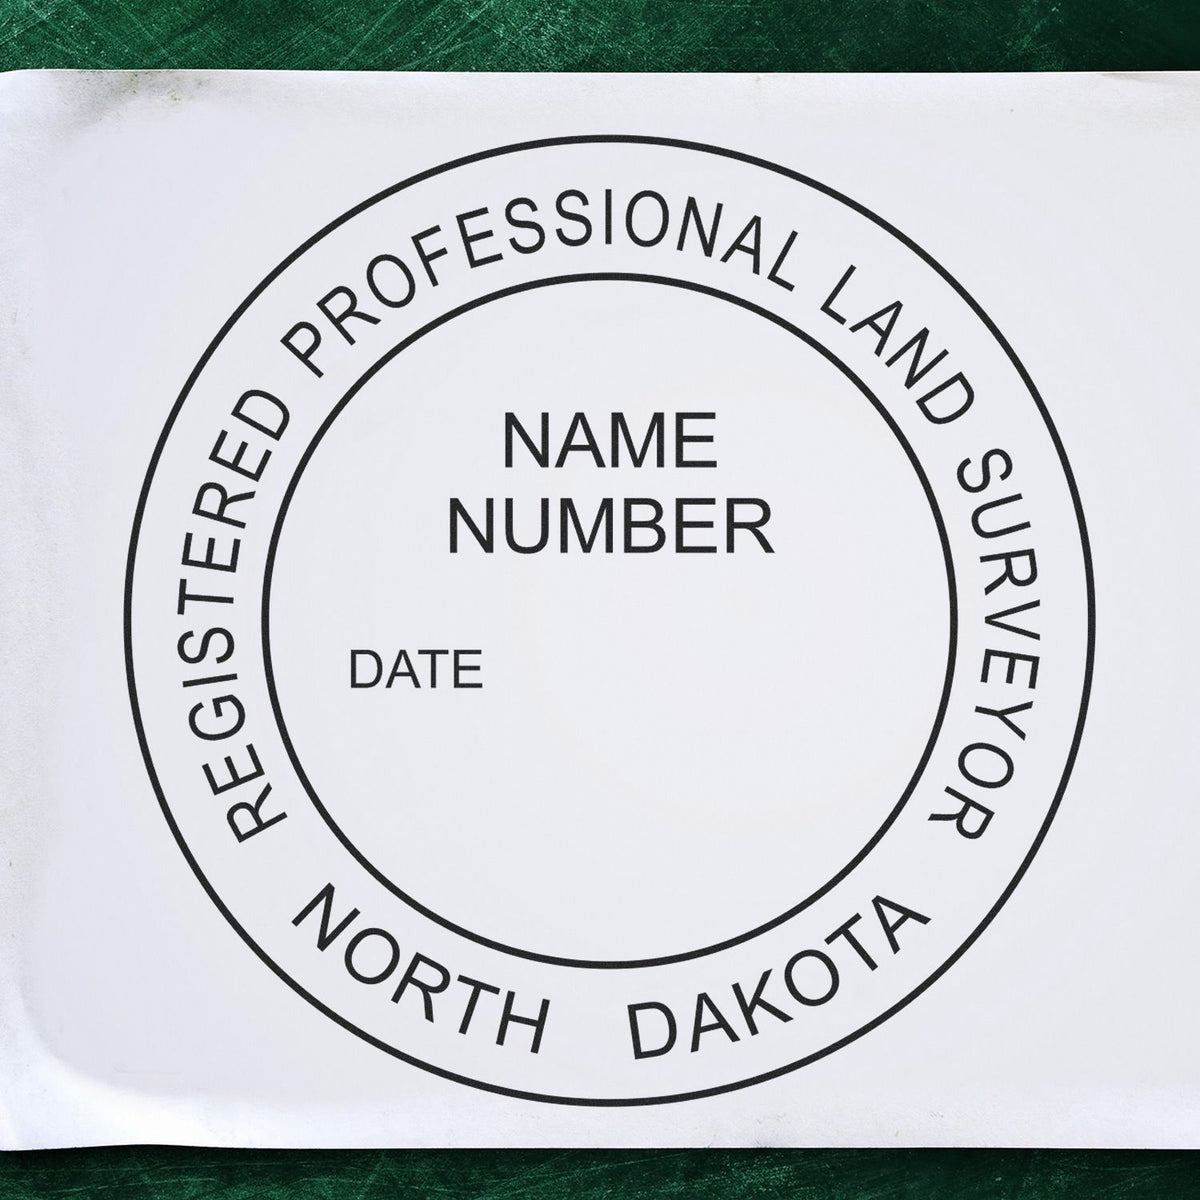 North Dakota Land Surveyor Seal Stamp In Use Photo